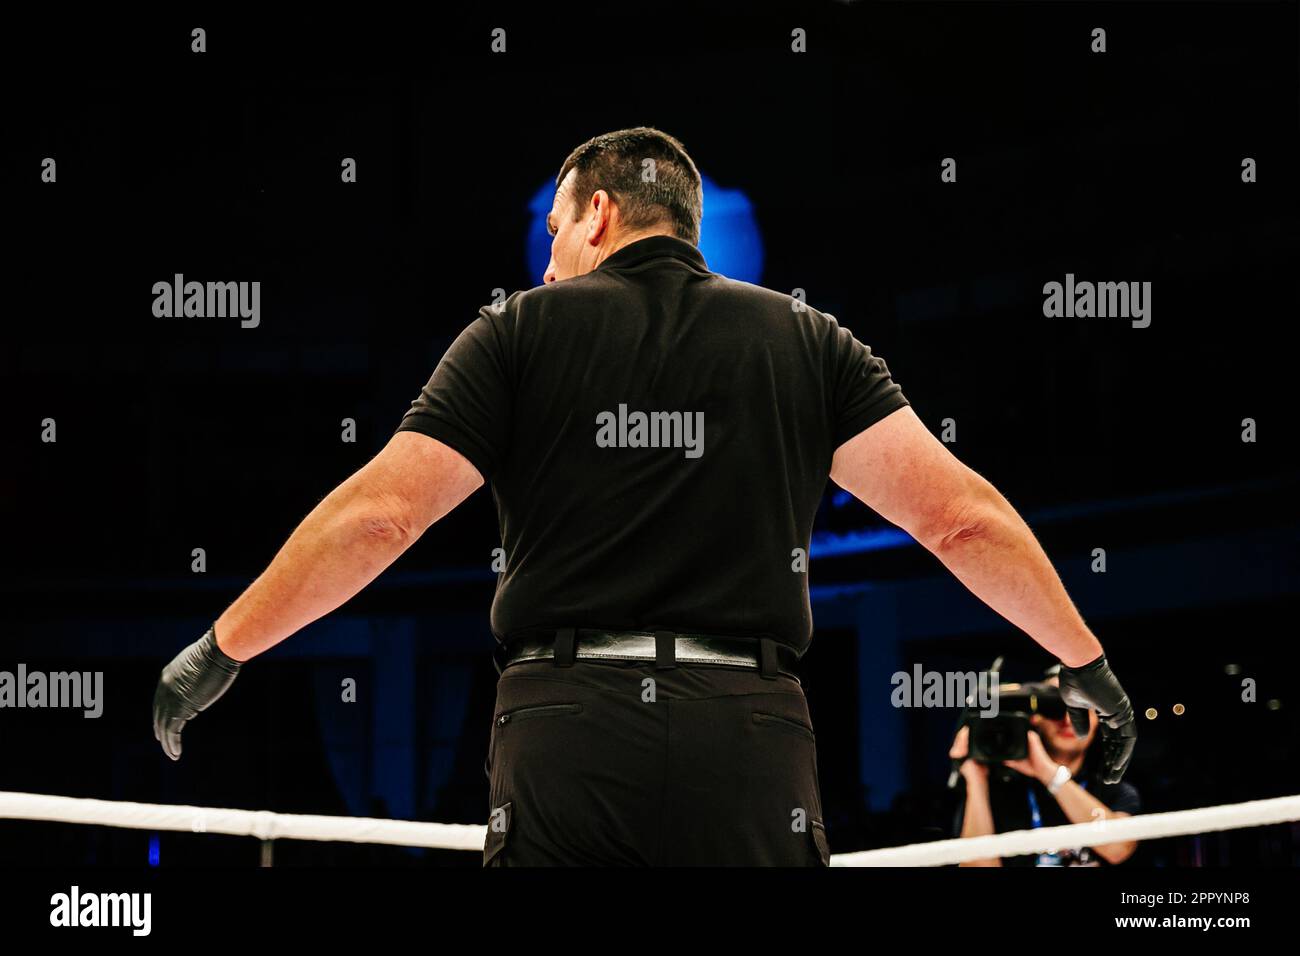 Rückansicht des Schiedsrichters, der während eines MMA-Kampfes im Ring steht, auf dunklem Hintergrund Stockfoto